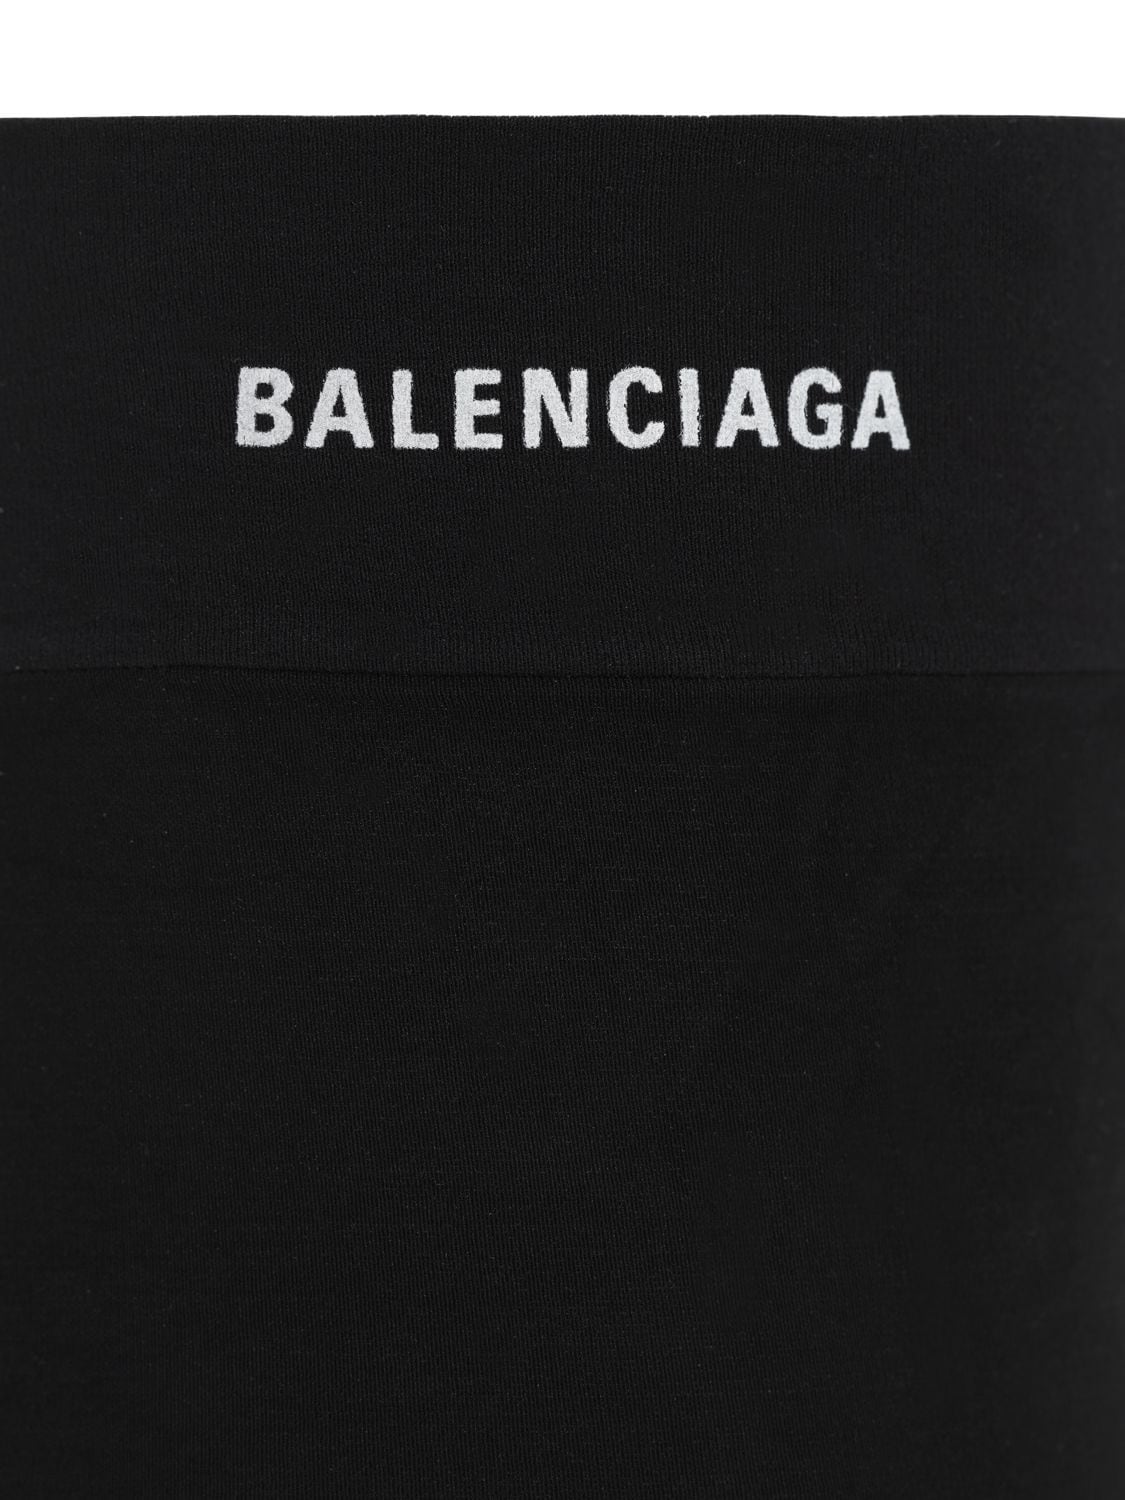 Balenciaga All Over New Logo Tights In Black